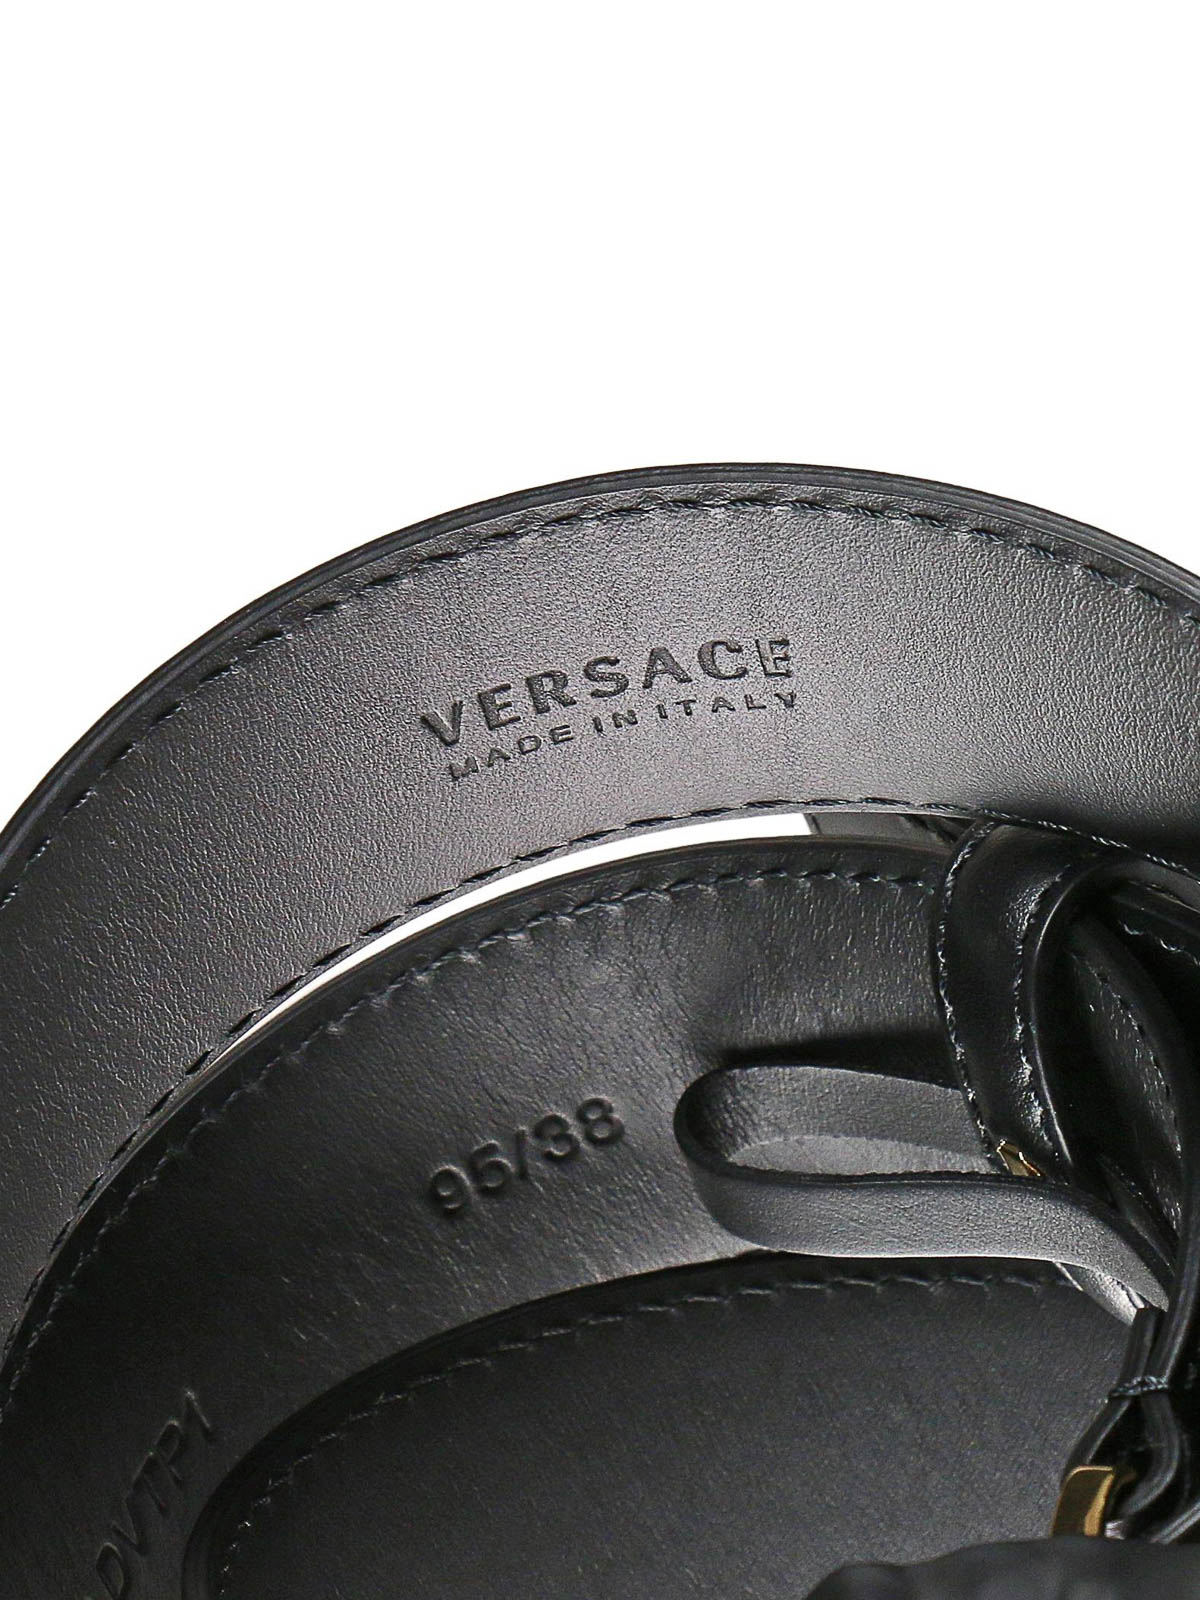 versace belt clearance